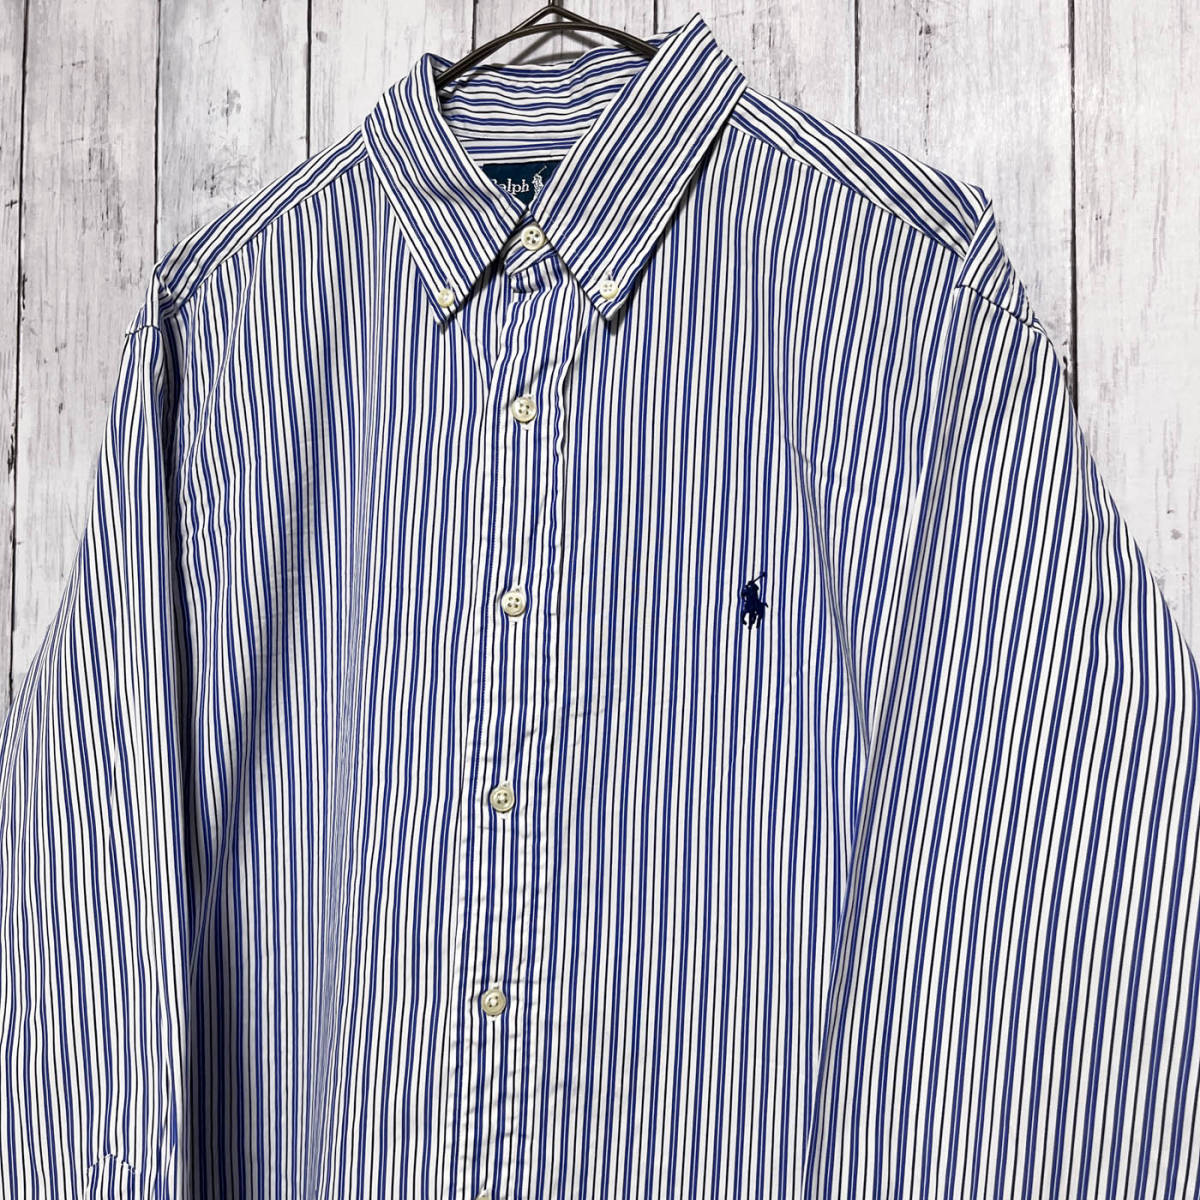 ラルフローレン Ralph Lauren CLASSIC FIT ストライプシャツ 長袖シャツ メンズ ワンポイント コットン100% サイズ16 Lサイズ 3‐993の画像3